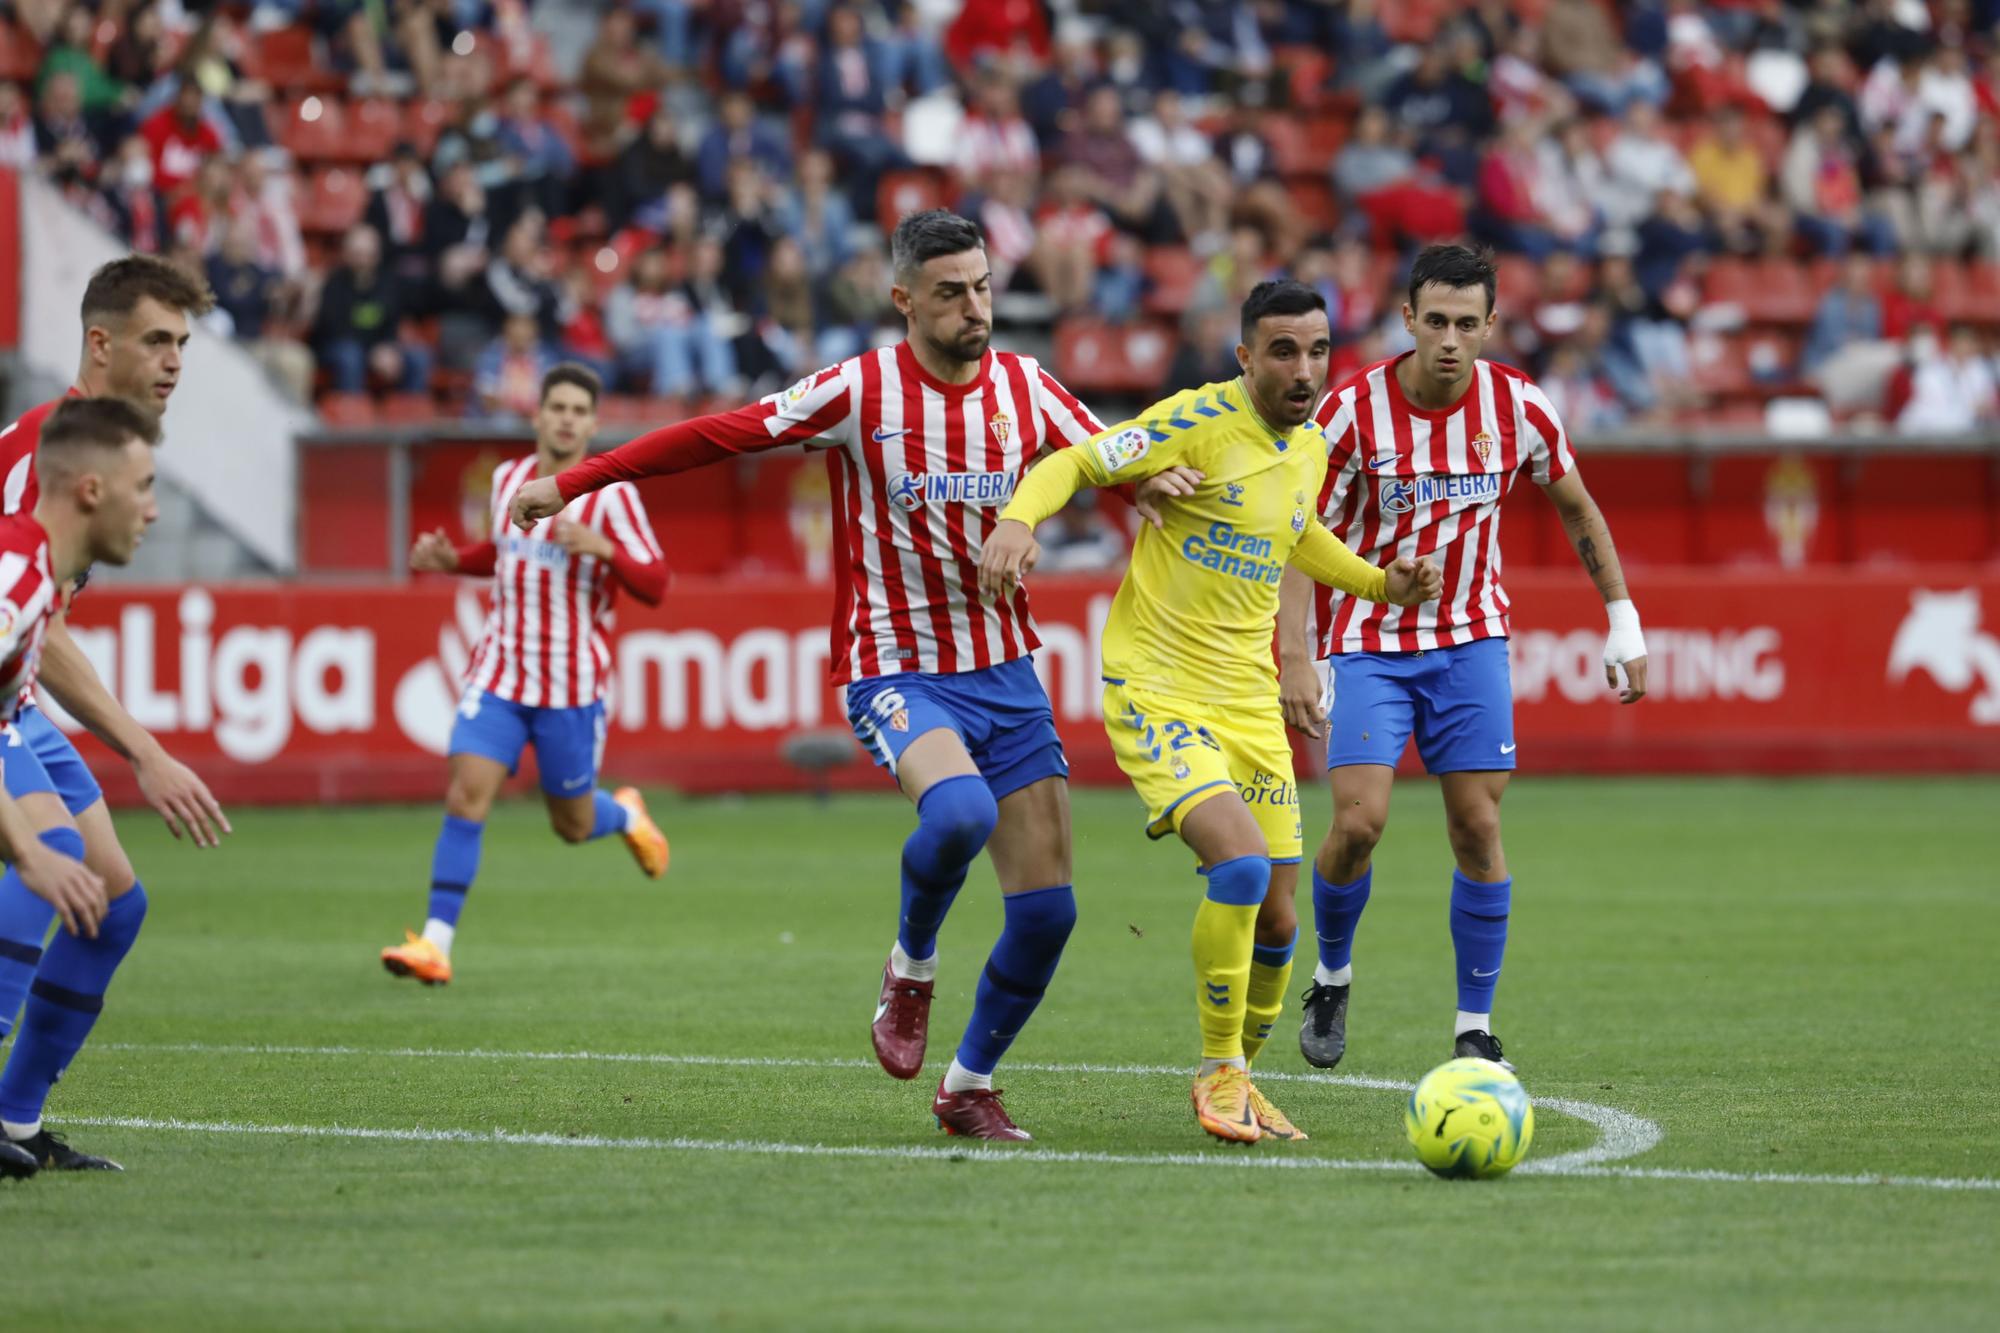 El partido del Sporting ante Las Palmas, en imágenes